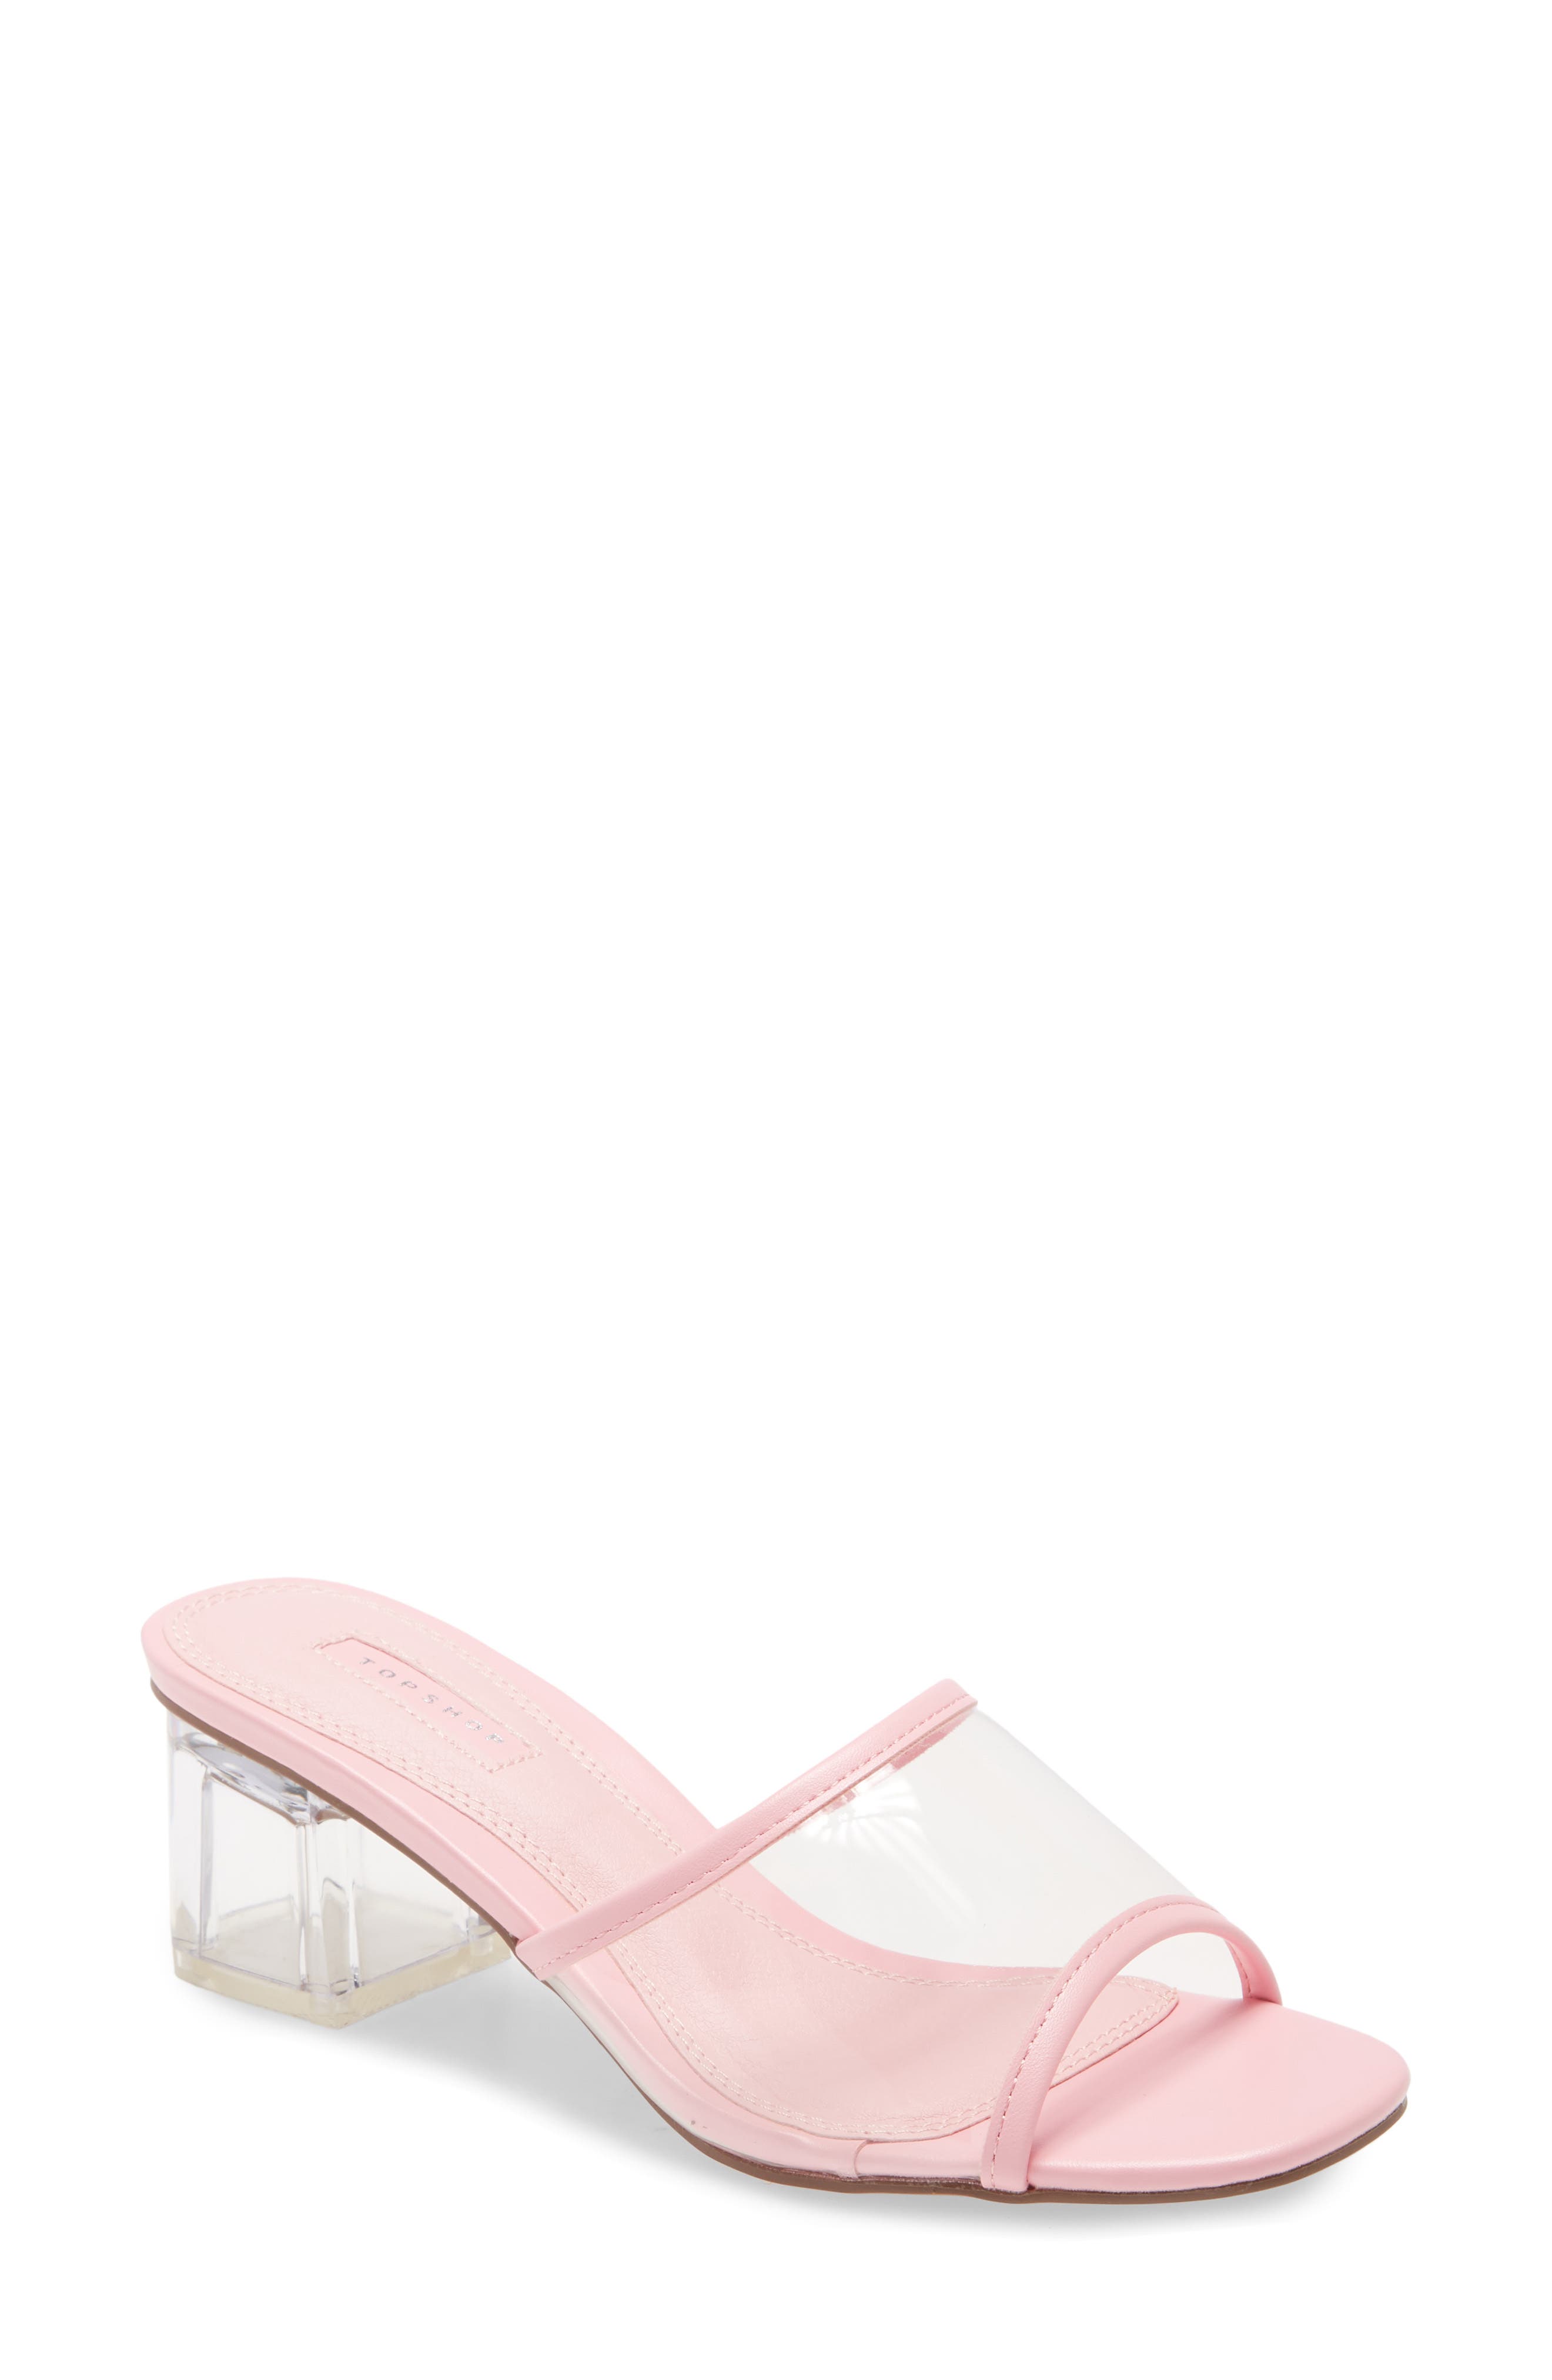 dusty pink block heel